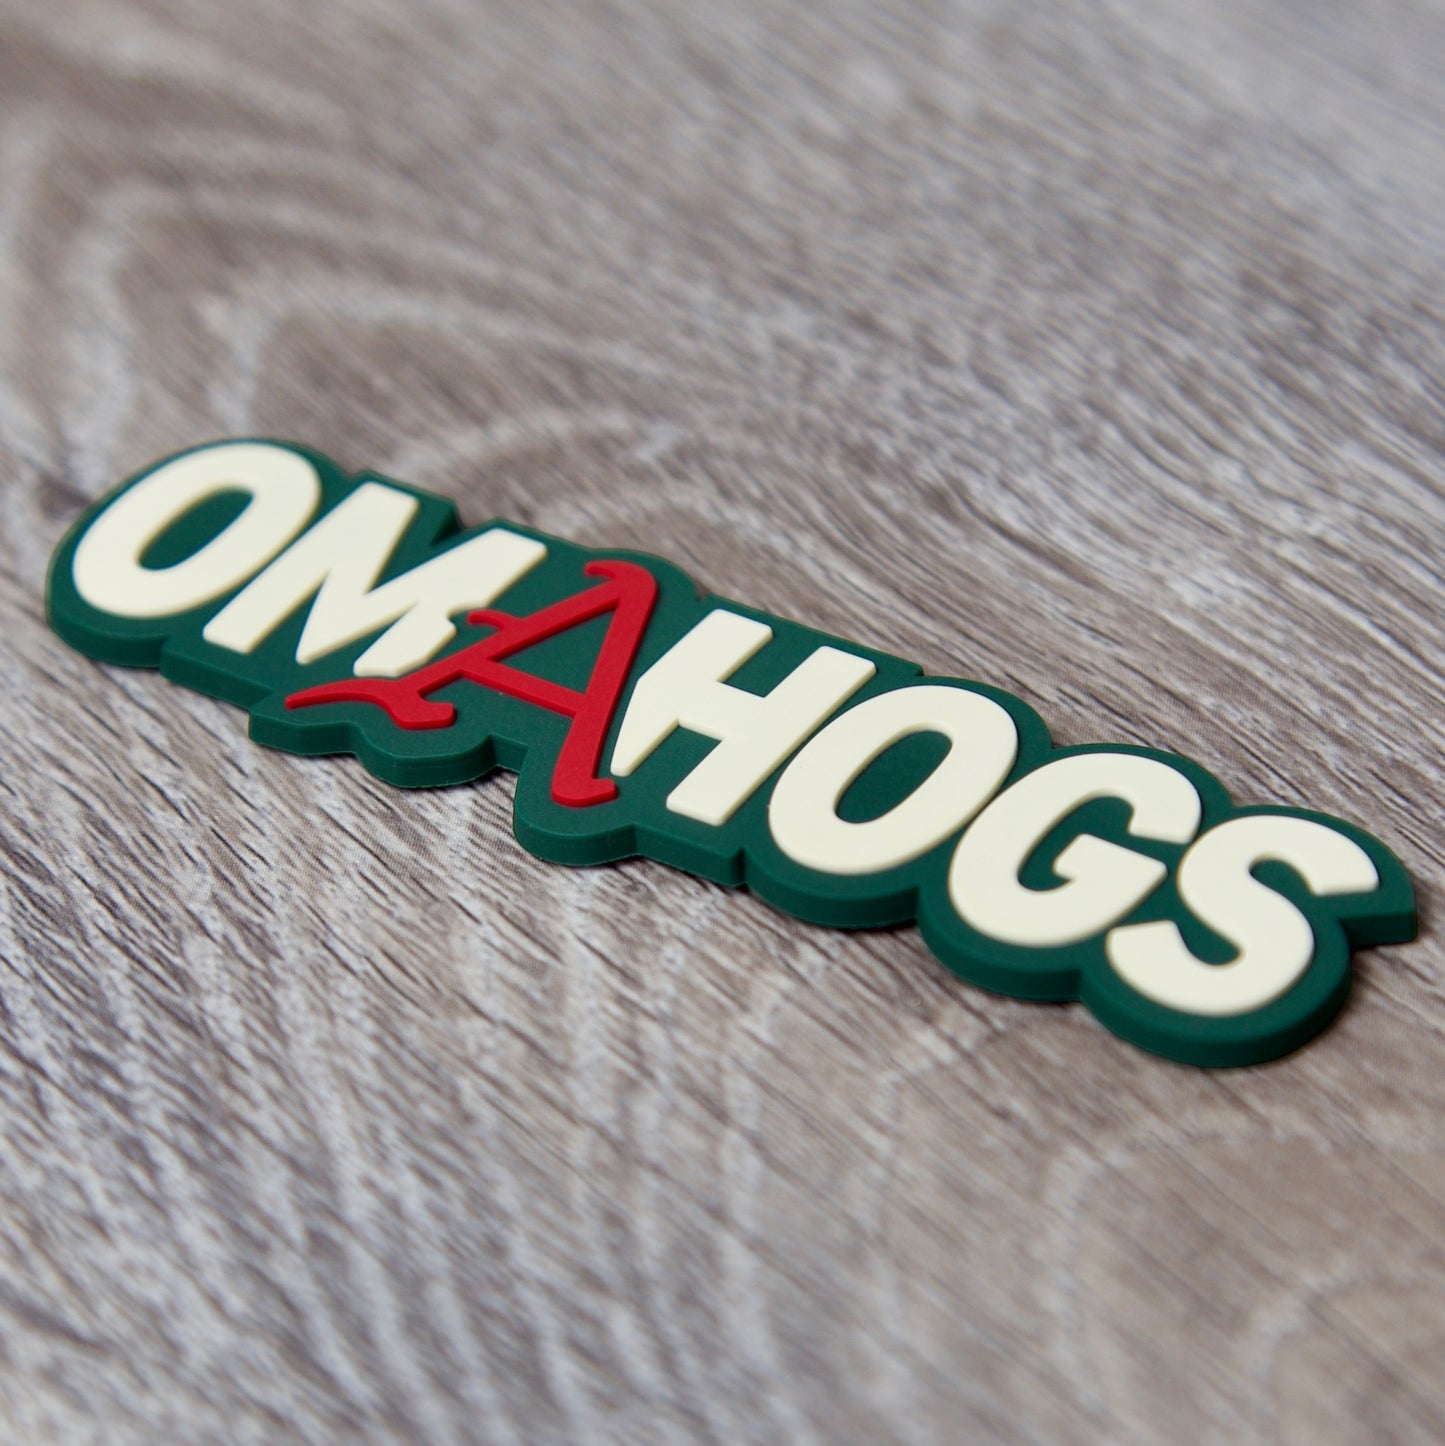 Arkansas Razorbacks OMAHOGS 3D Snapback Seven-Panel Trucker Hat- Dark Green/ Black